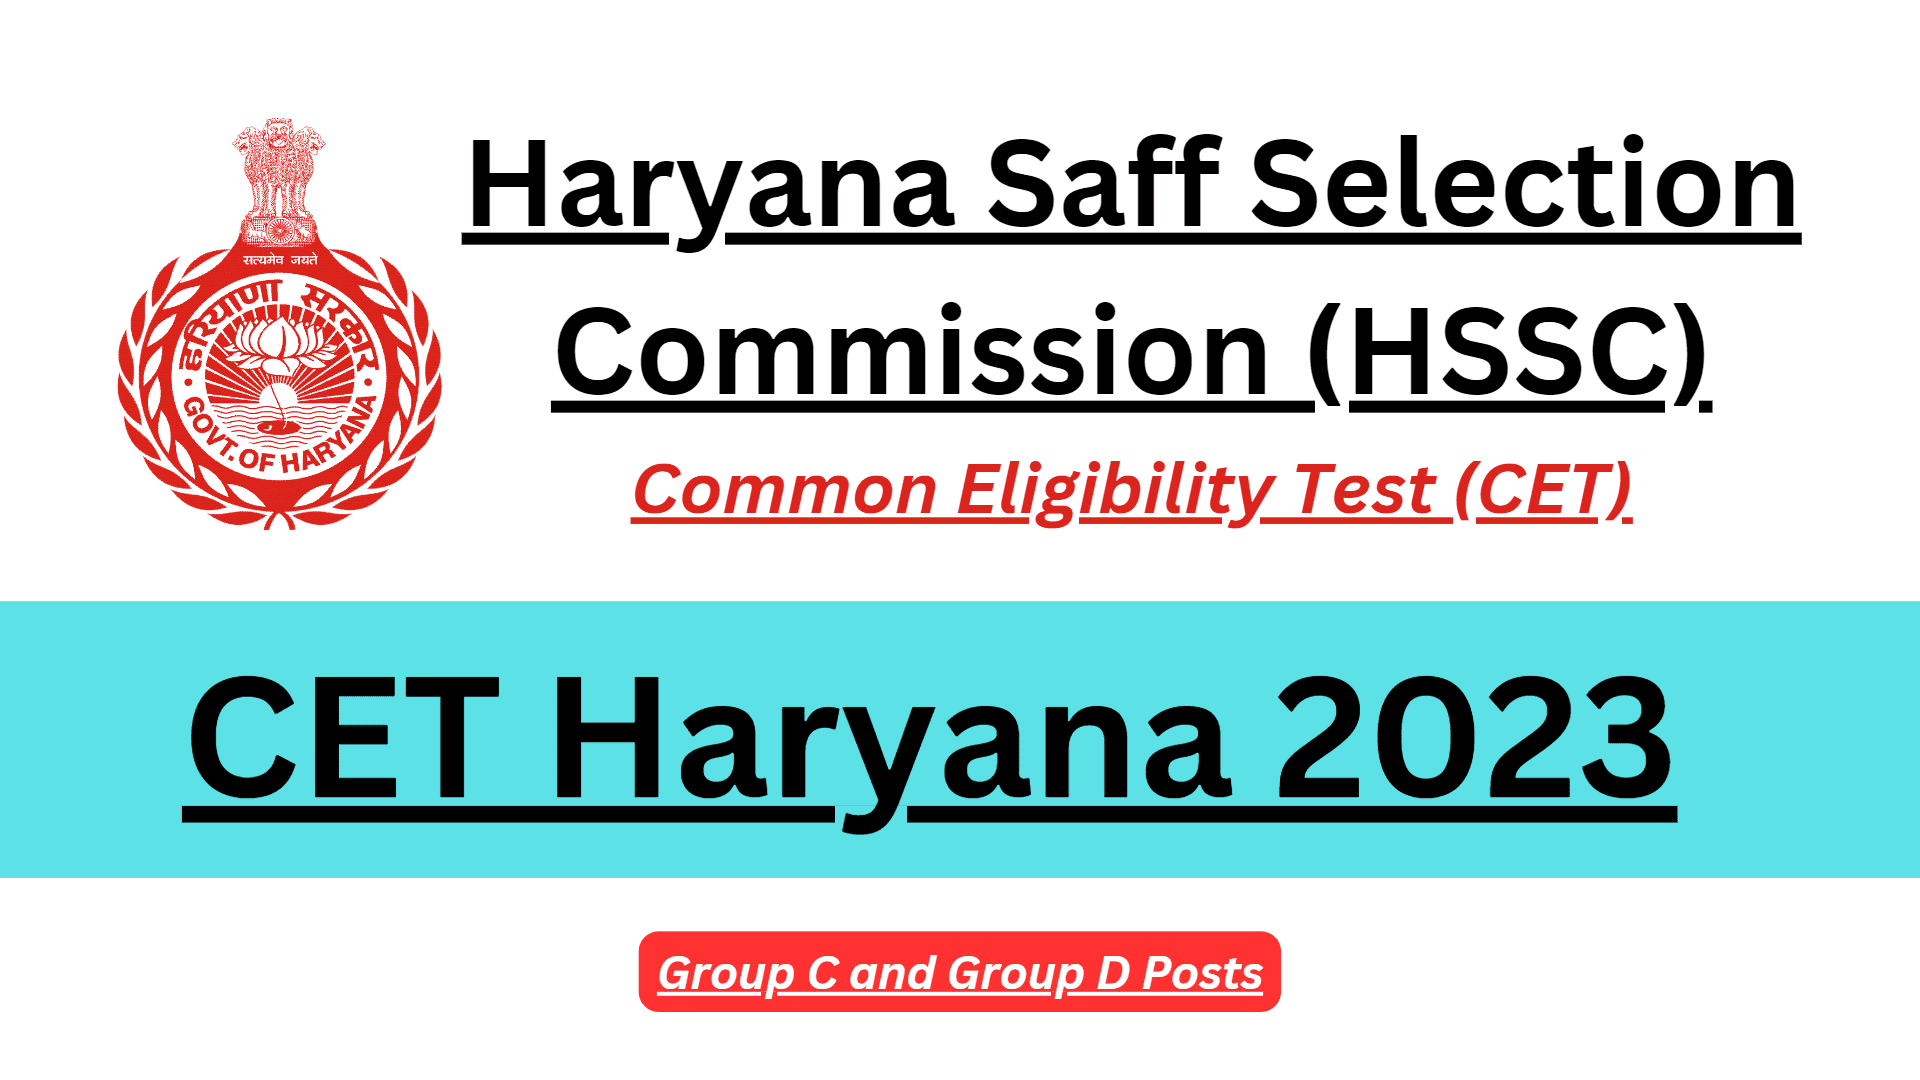 CET Haryana 2023